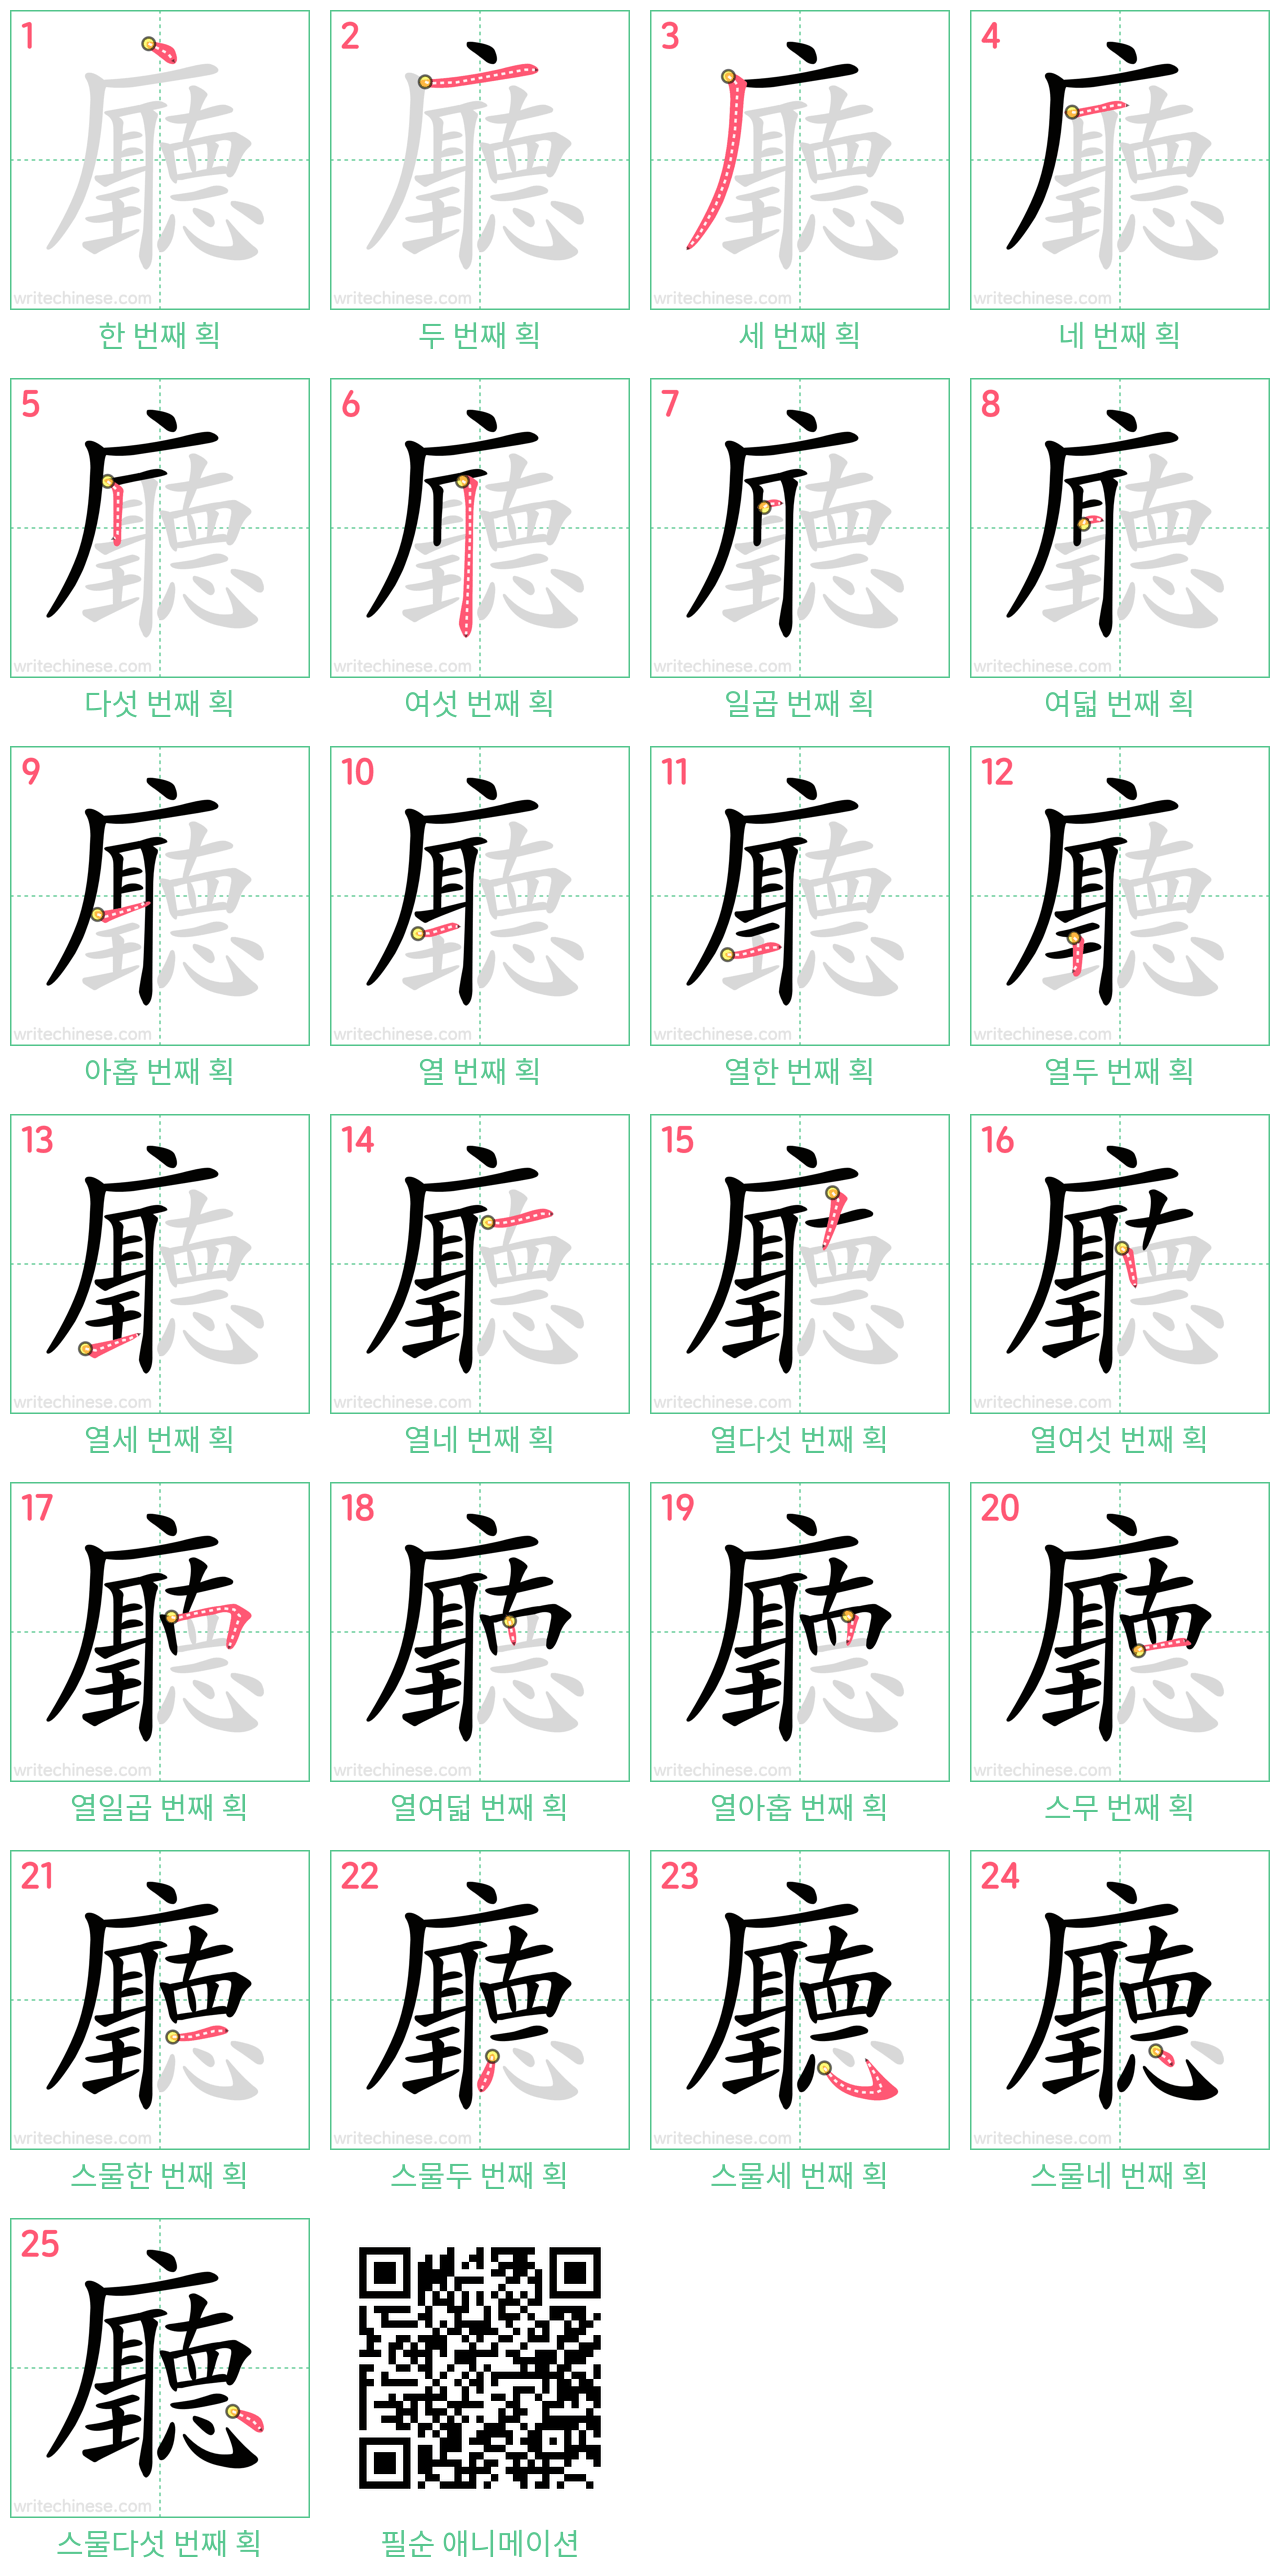 廳 step-by-step stroke order diagrams